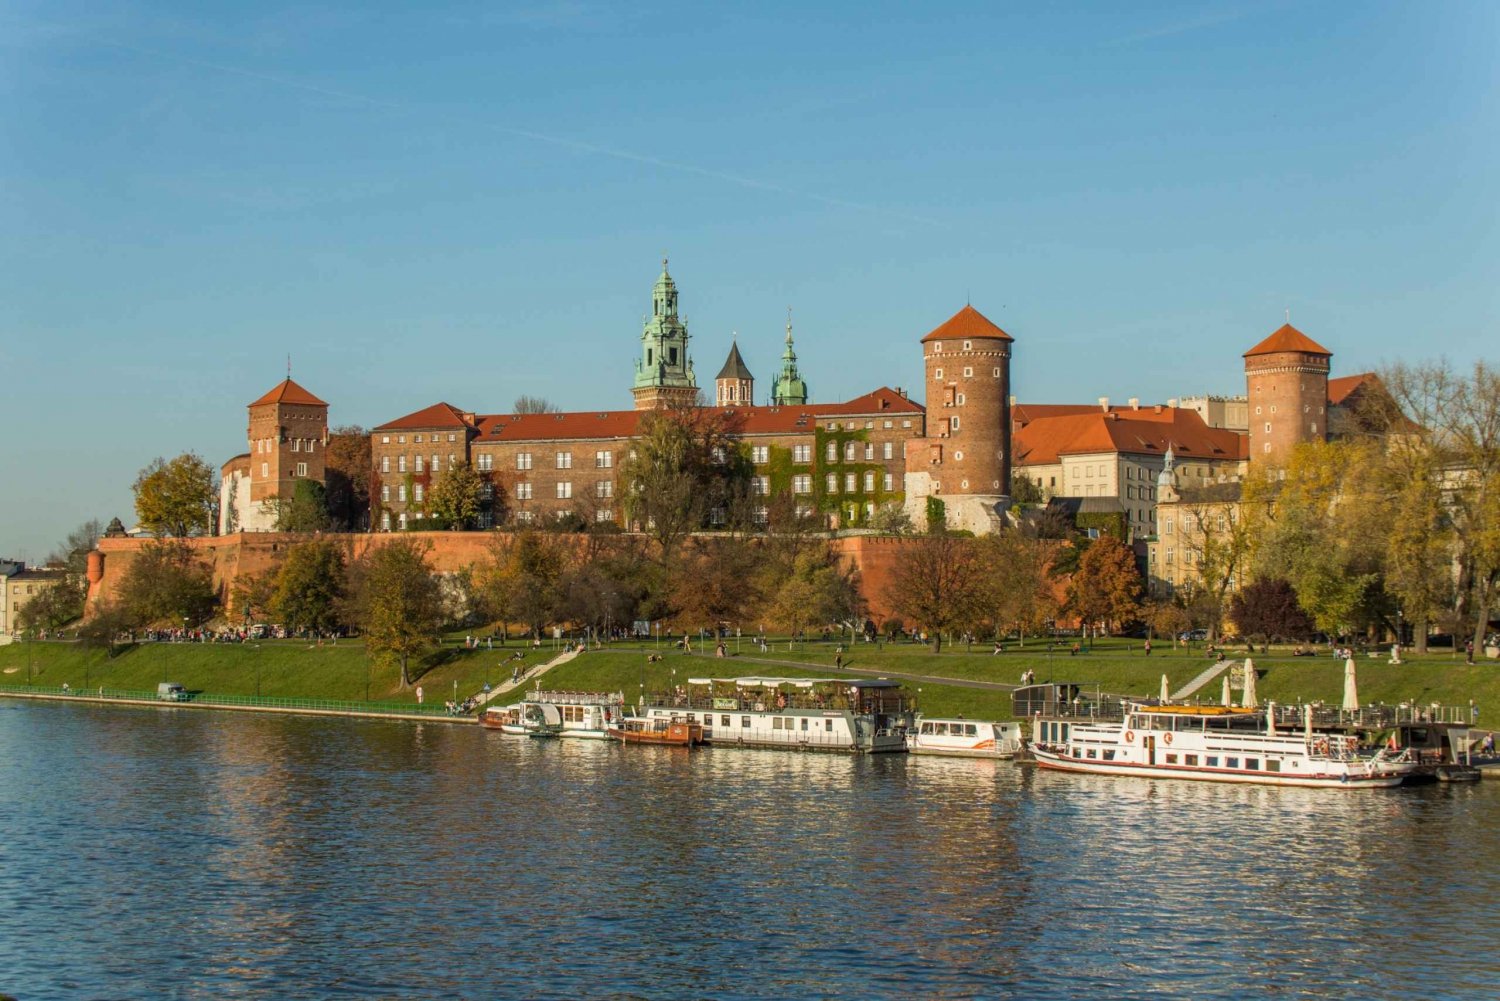 Krakow: Wawel-slottet, katedralen och Rynek med lunch